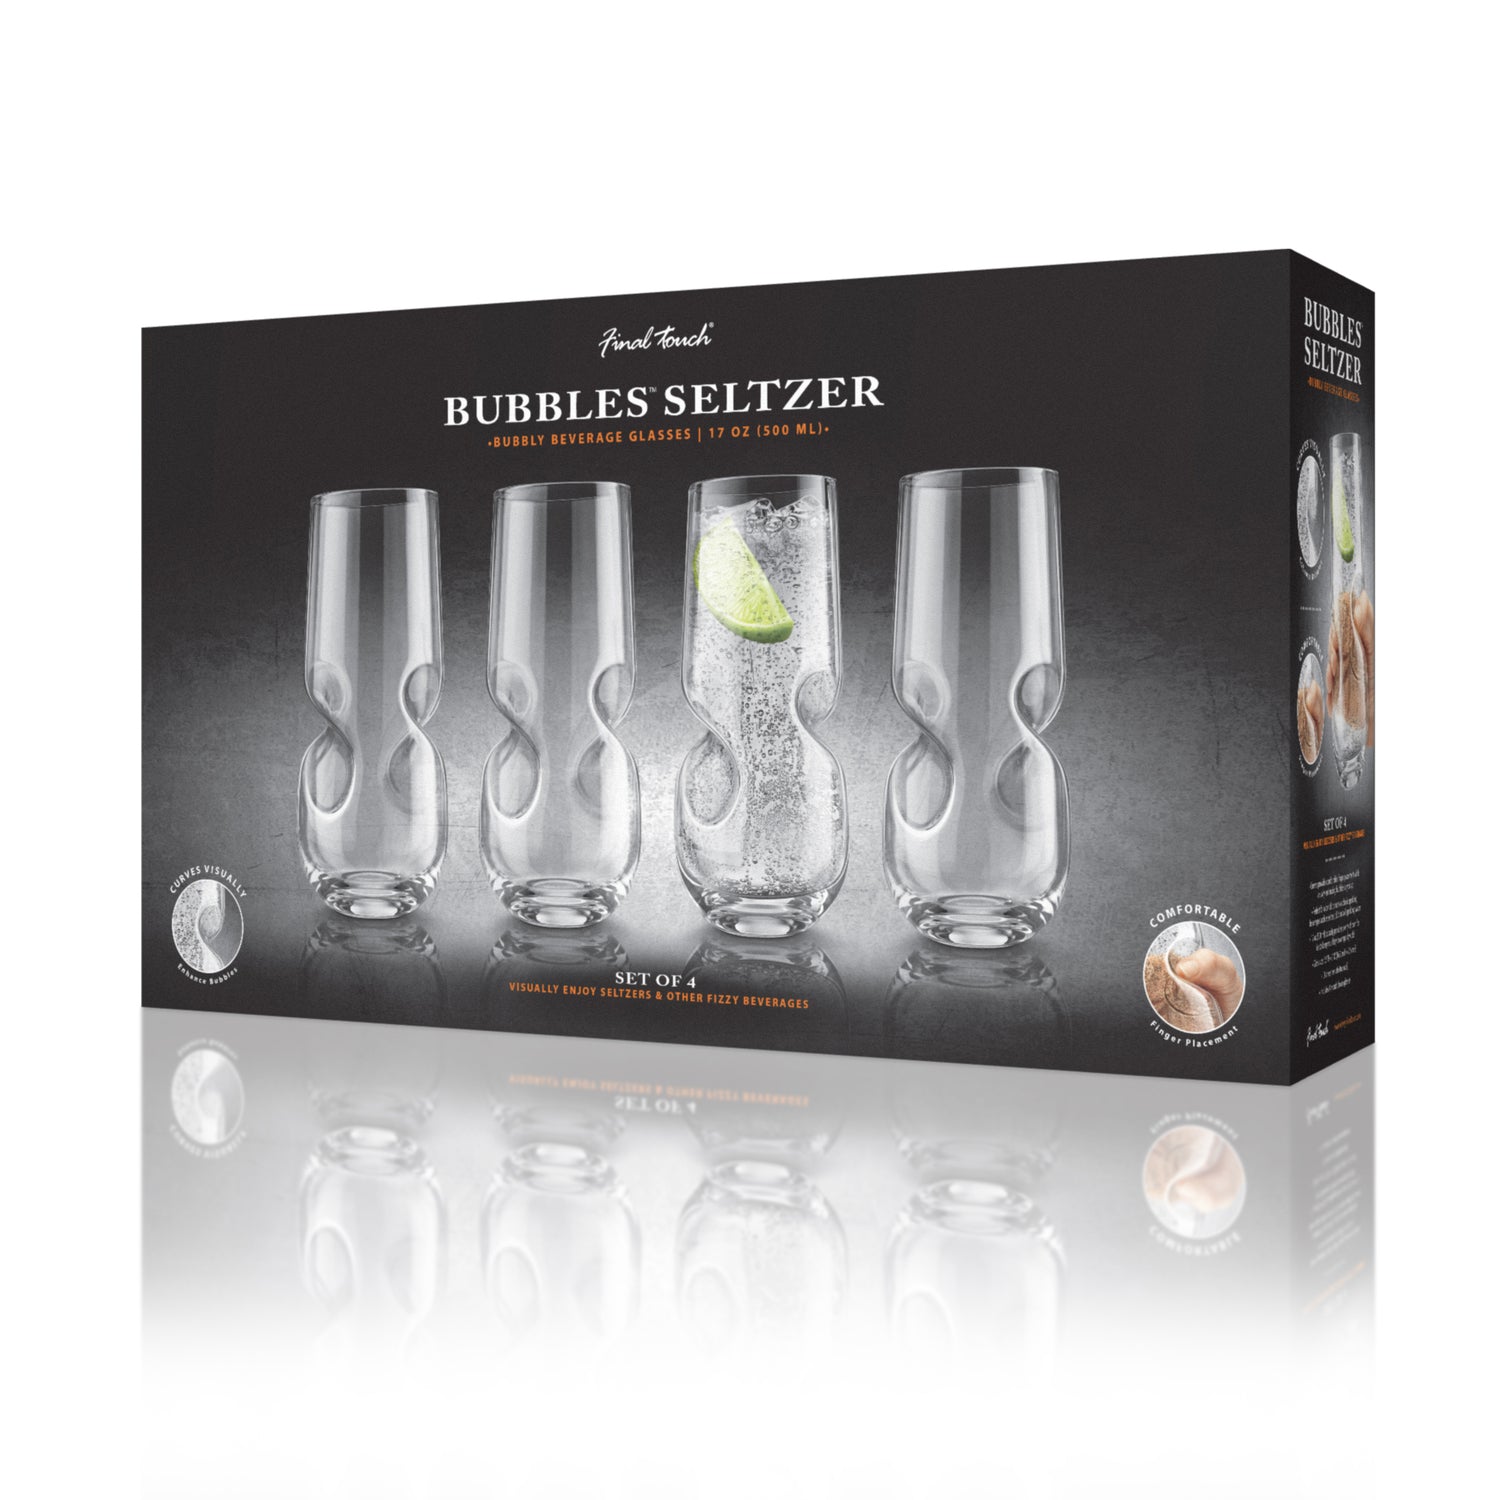 Bubbles Seltzer / Bubbly Beverage Glasses - Set of 4 - 17 oz (500 ml)